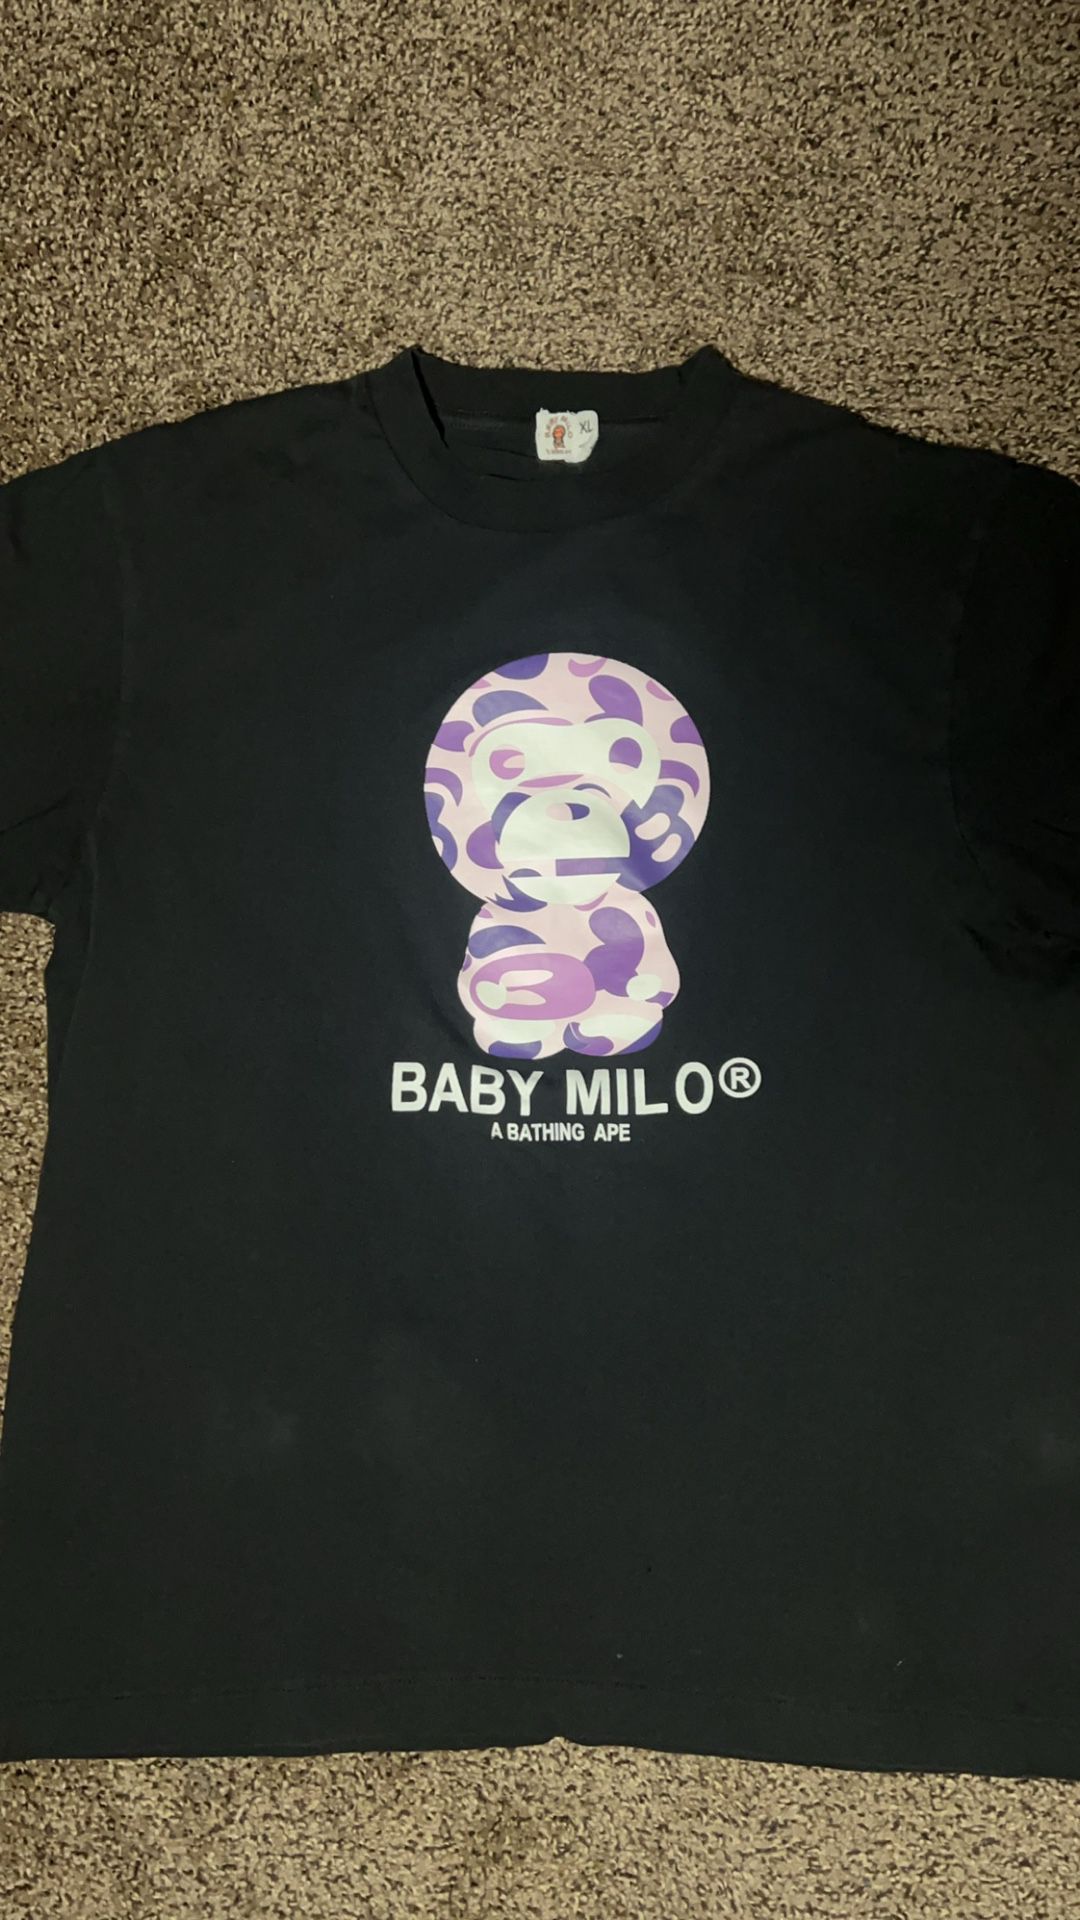 Bape baby milo shirt